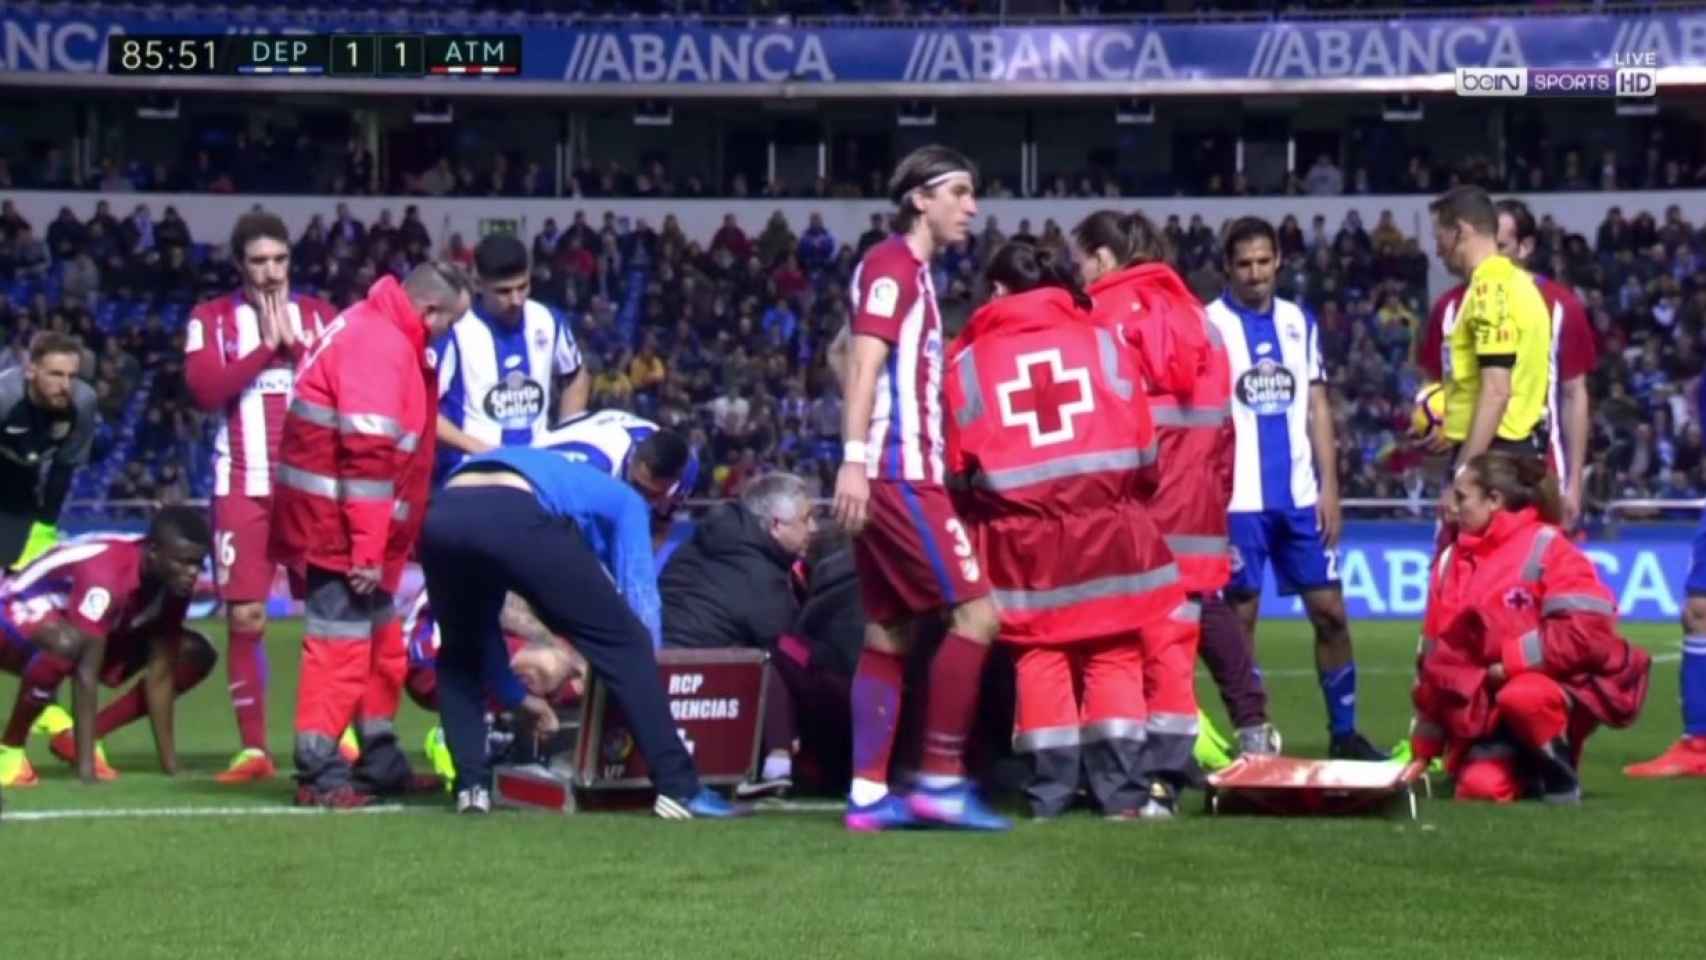 Los jugadores del Atlético de Madrid, preocupados tras el choque.